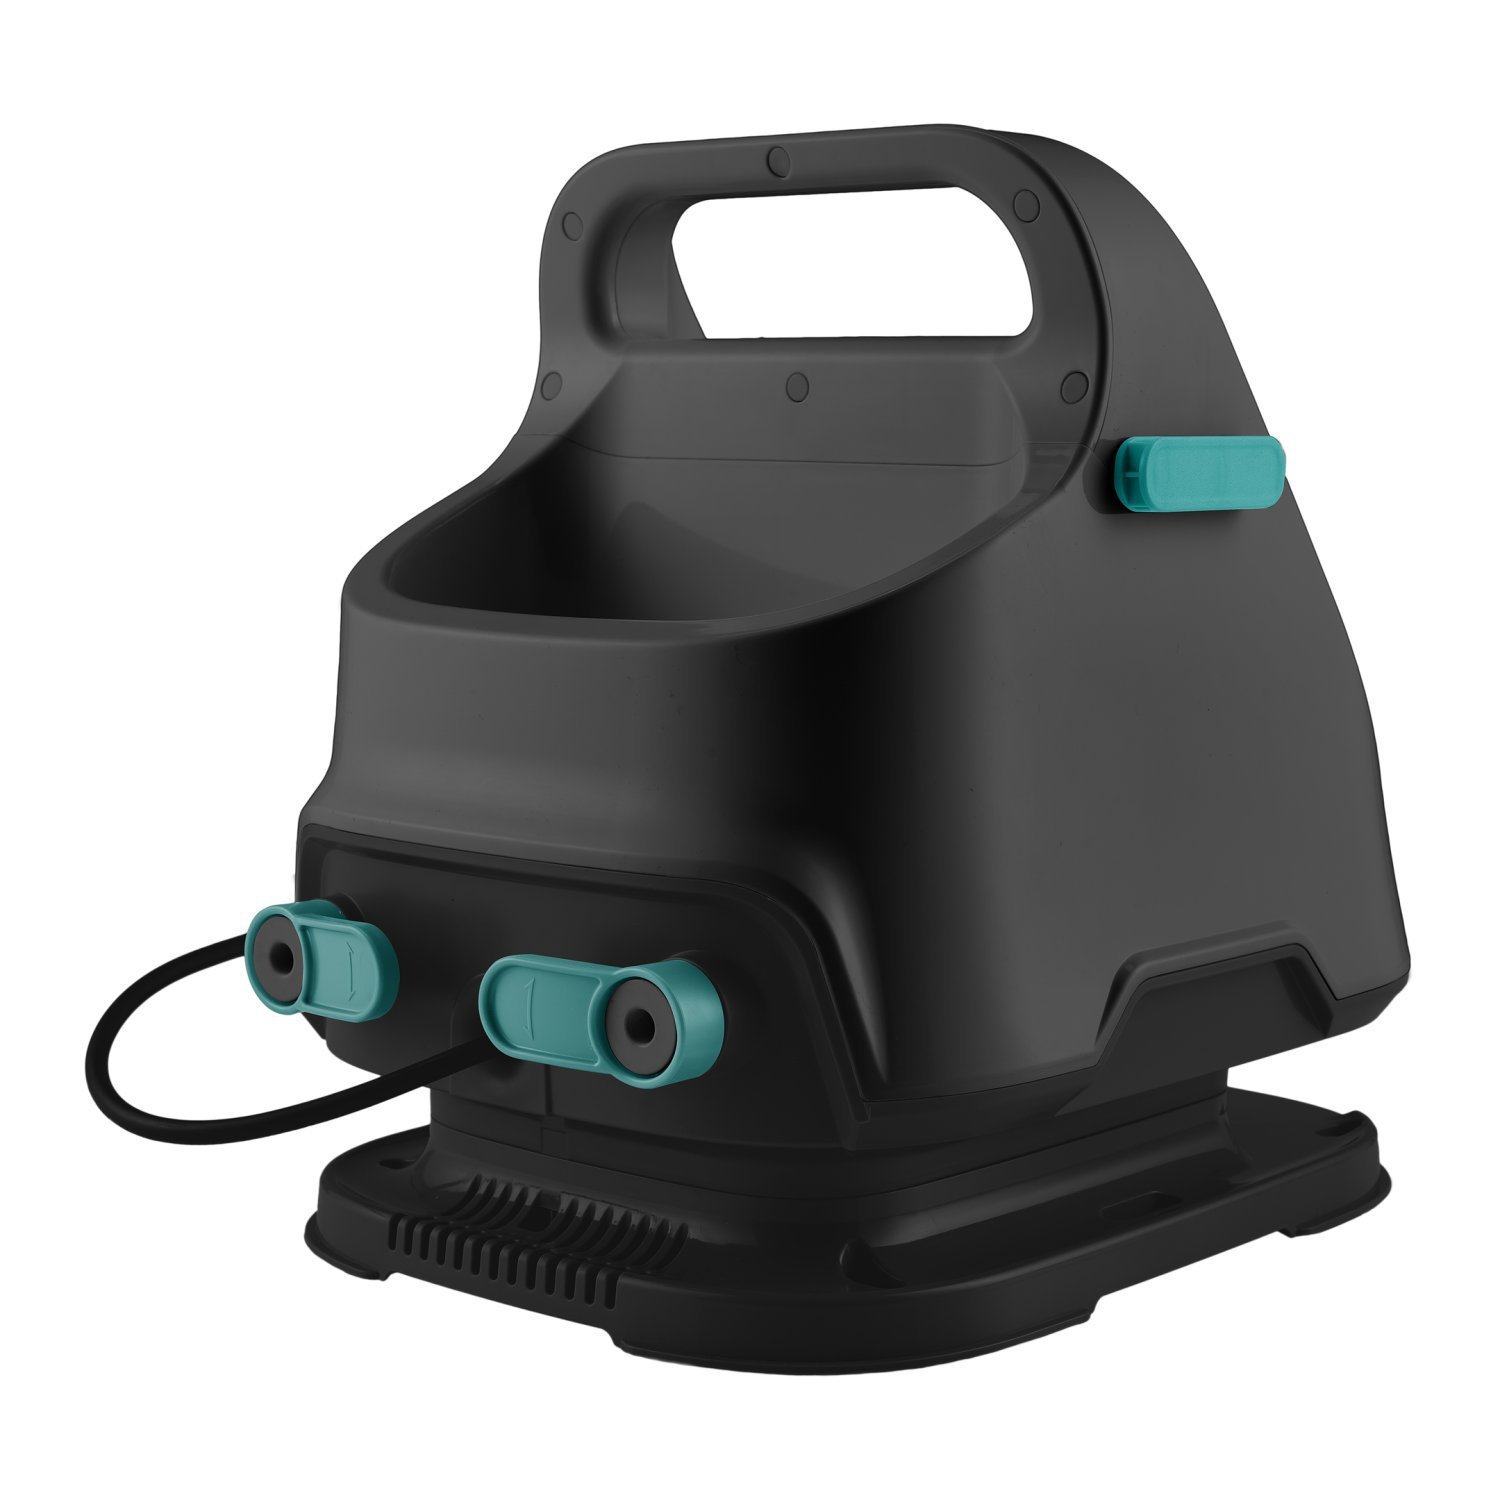 Extratora e Higienizadora WAP Spot Cleaner Portátil 3 em 1 Borrifa, Esfrega e Extrai 1600W 127V Preto - 7